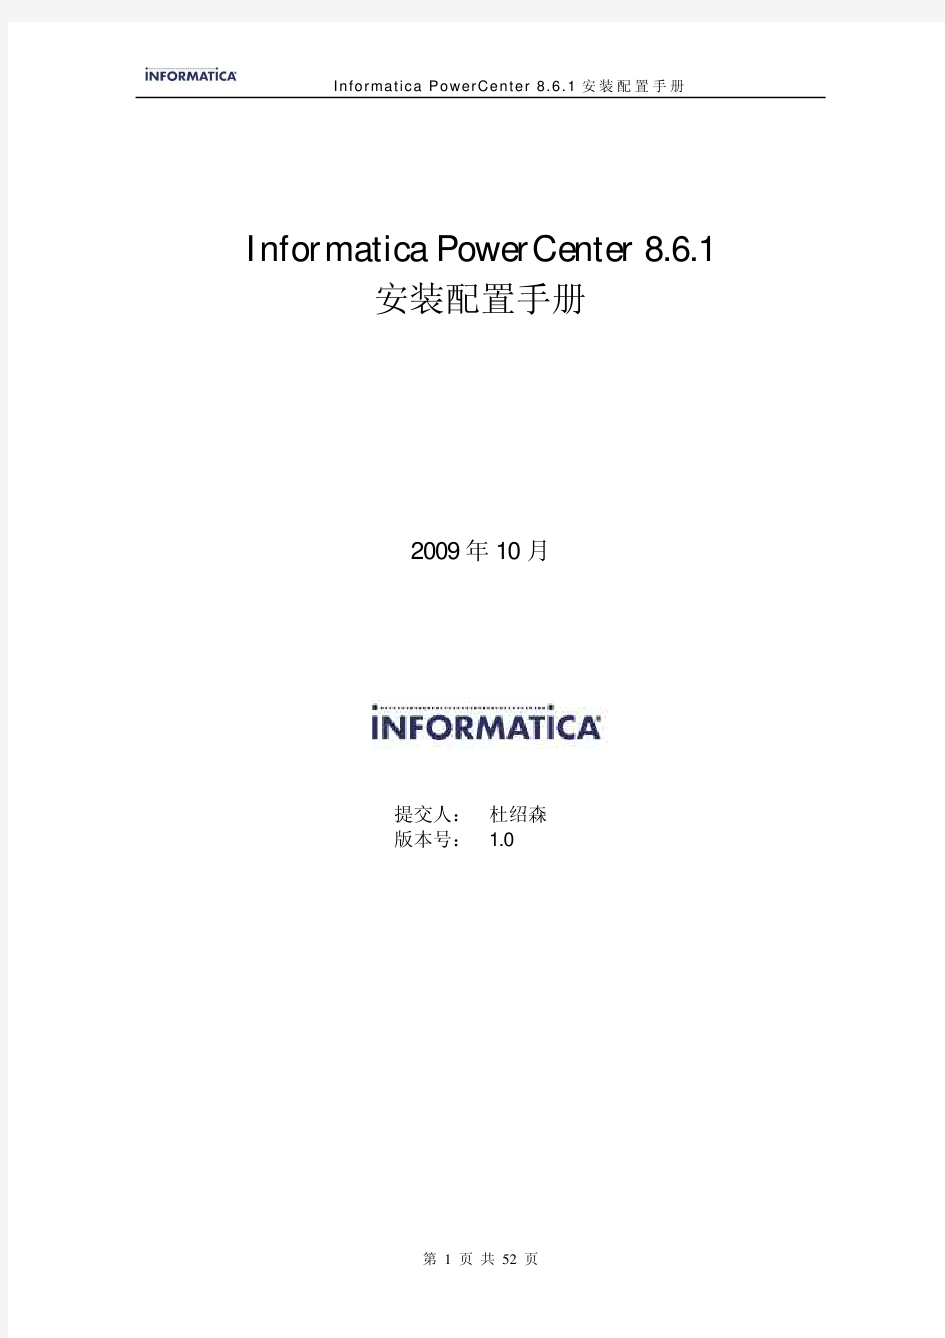 InformaticaPowerCenter8.6.1安装配置手册